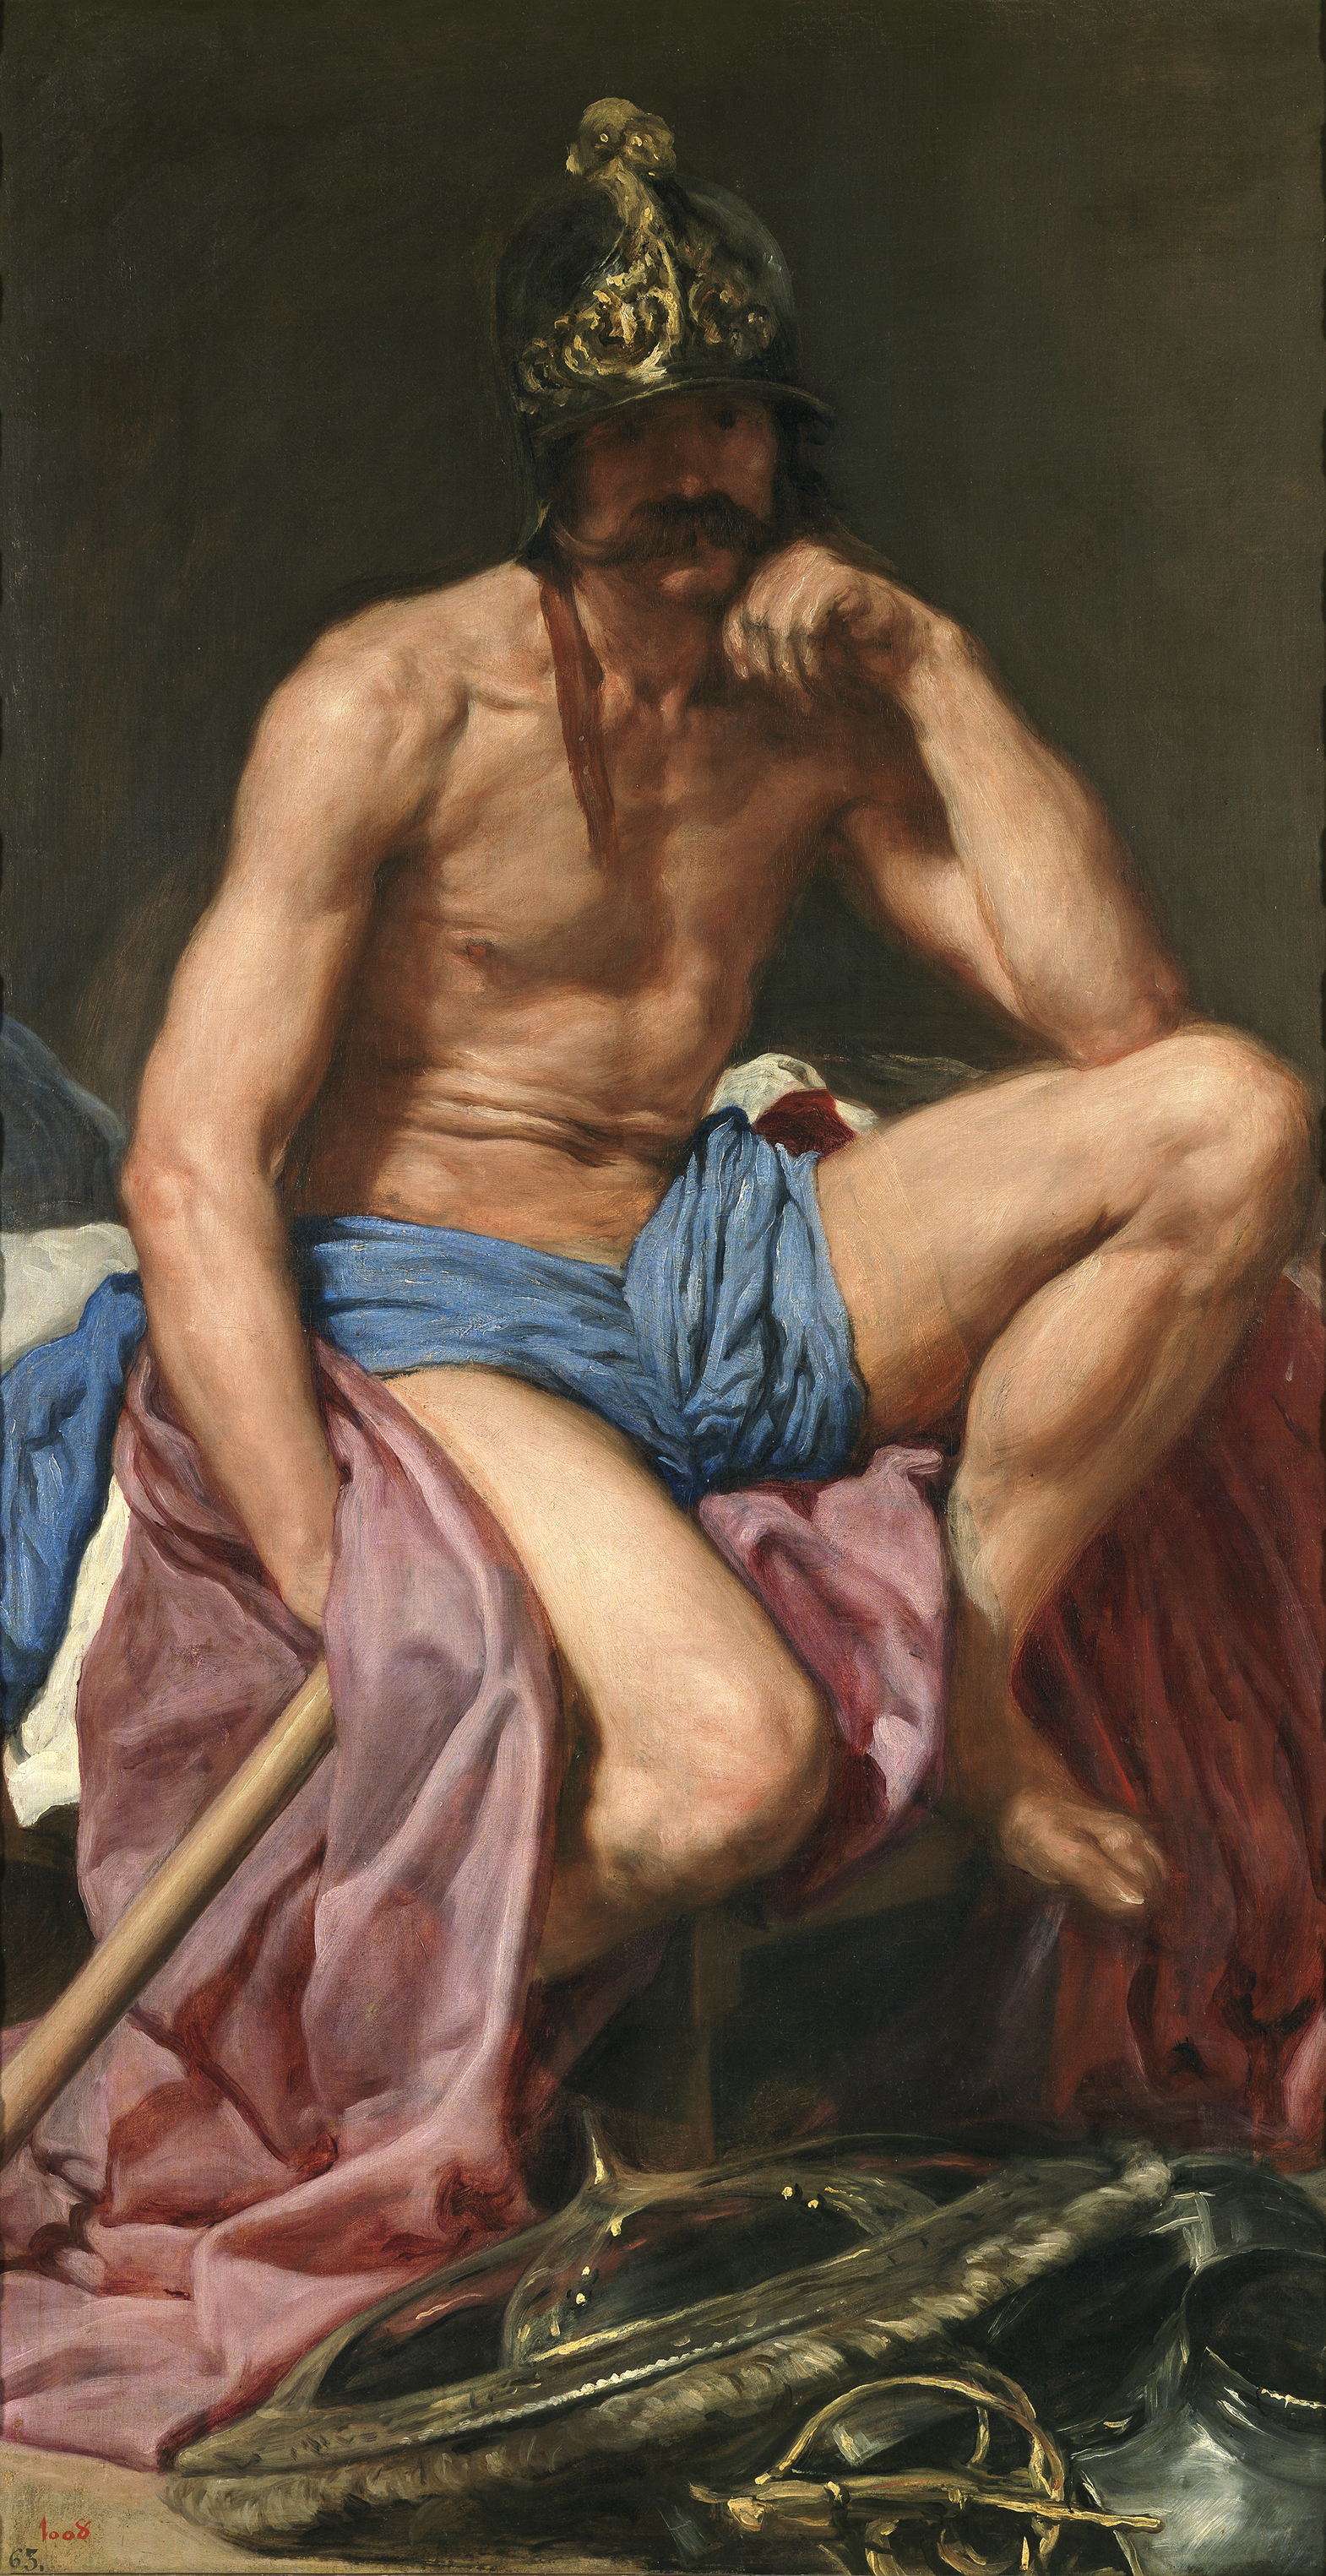 Il riposo di Marte by Diego Velázquez - 1640 - 70 in × 37 in 